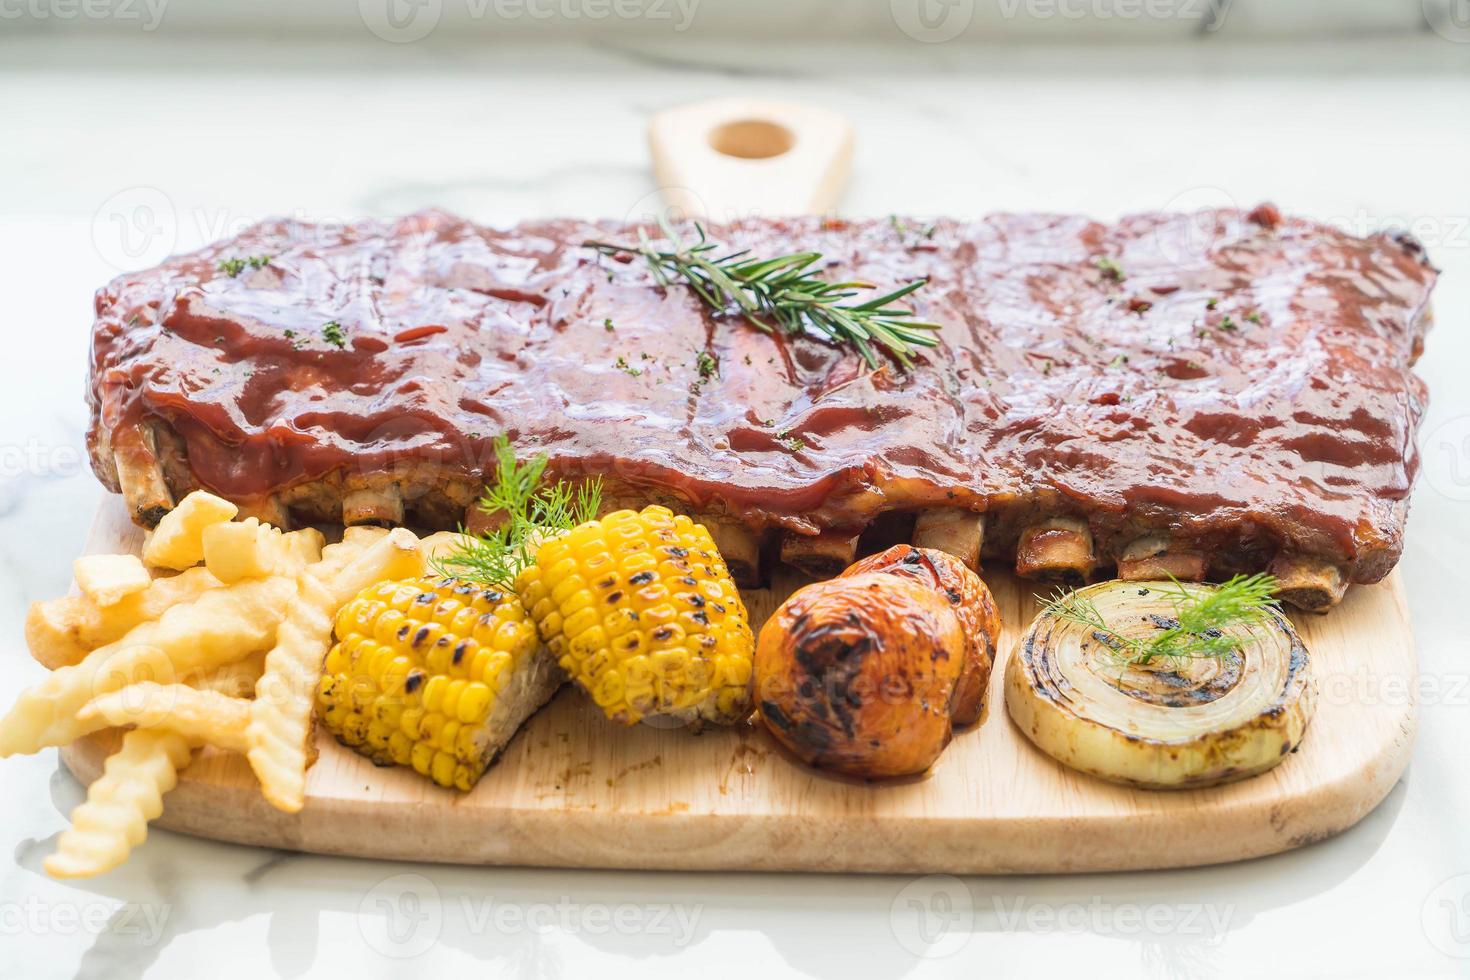 côtes de porc grillées avec sauce barbecue et frites de légumes et frech photo